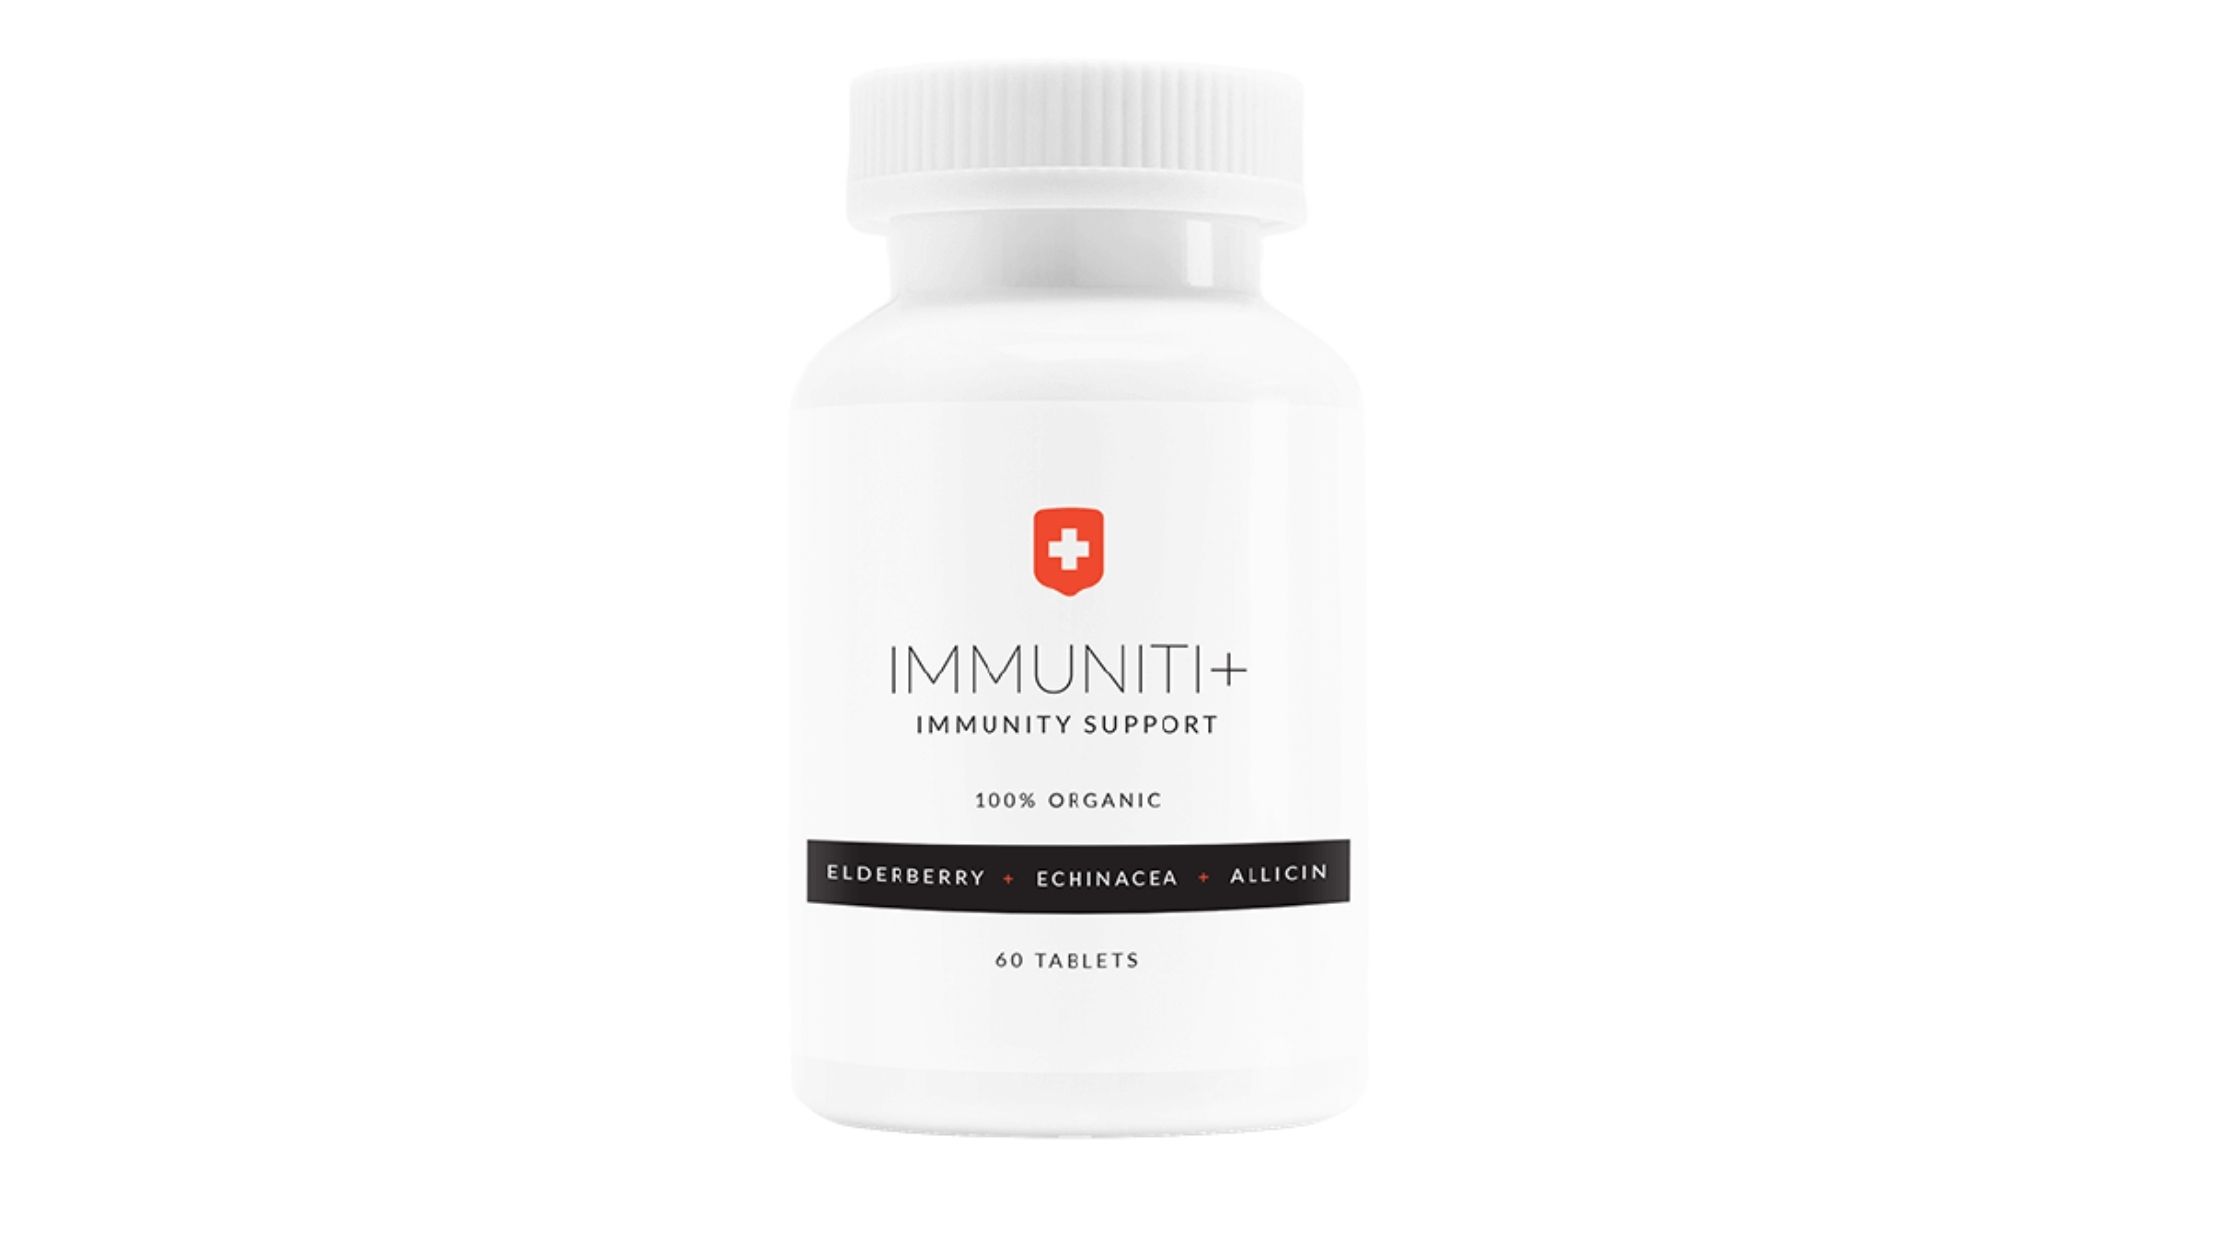 Immuniti-Reviews-2